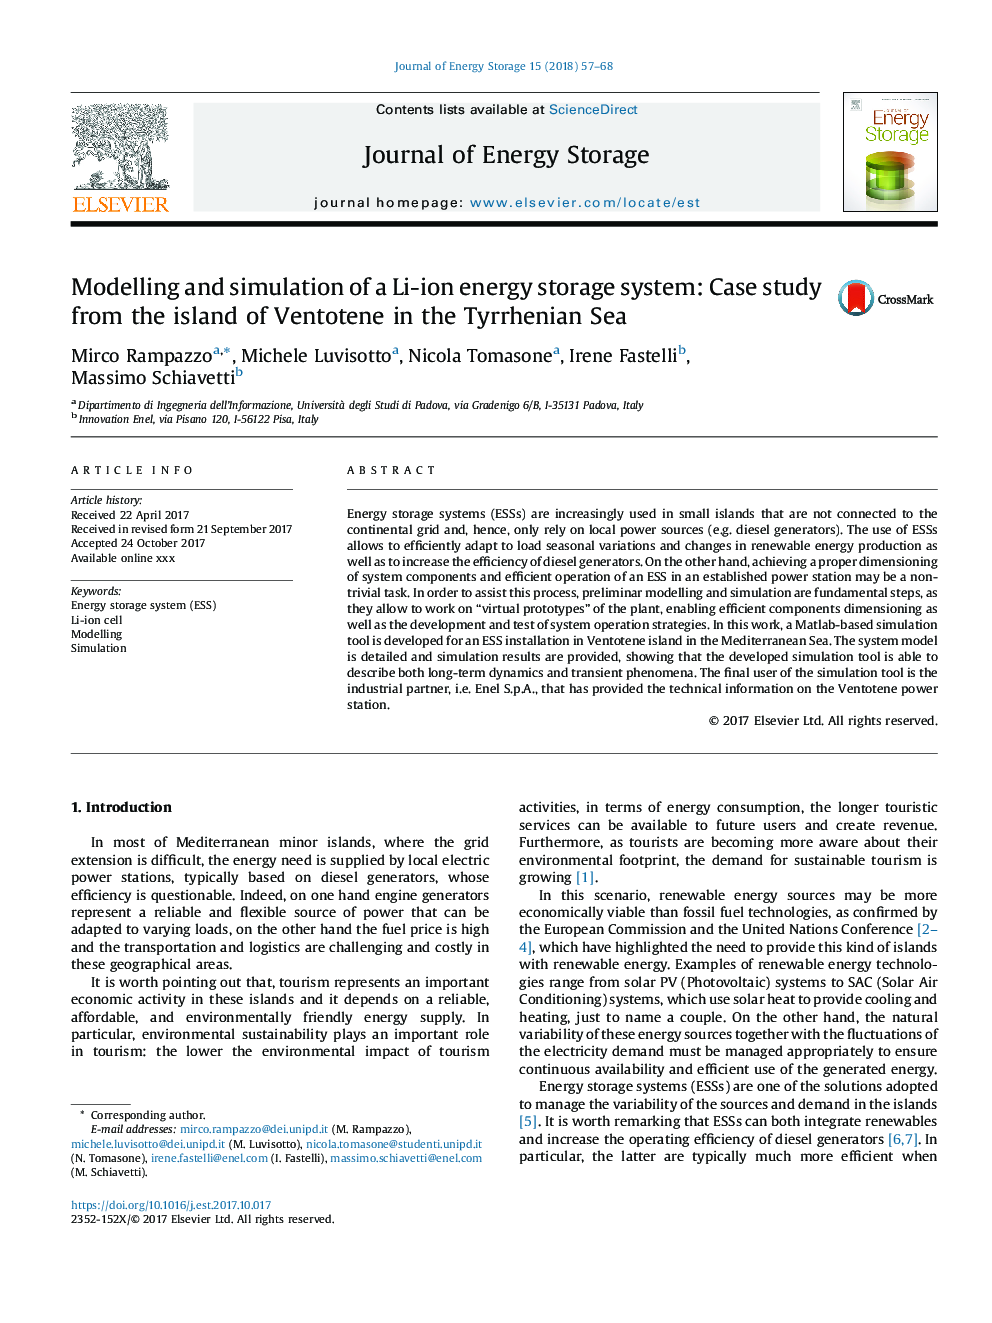 مدل سازی و شبیه سازی یک سیستم ذخیره سازی انرژی یون لیتیوم: مطالعه موردی از جزیره ونتوتن در دریای تایرین 